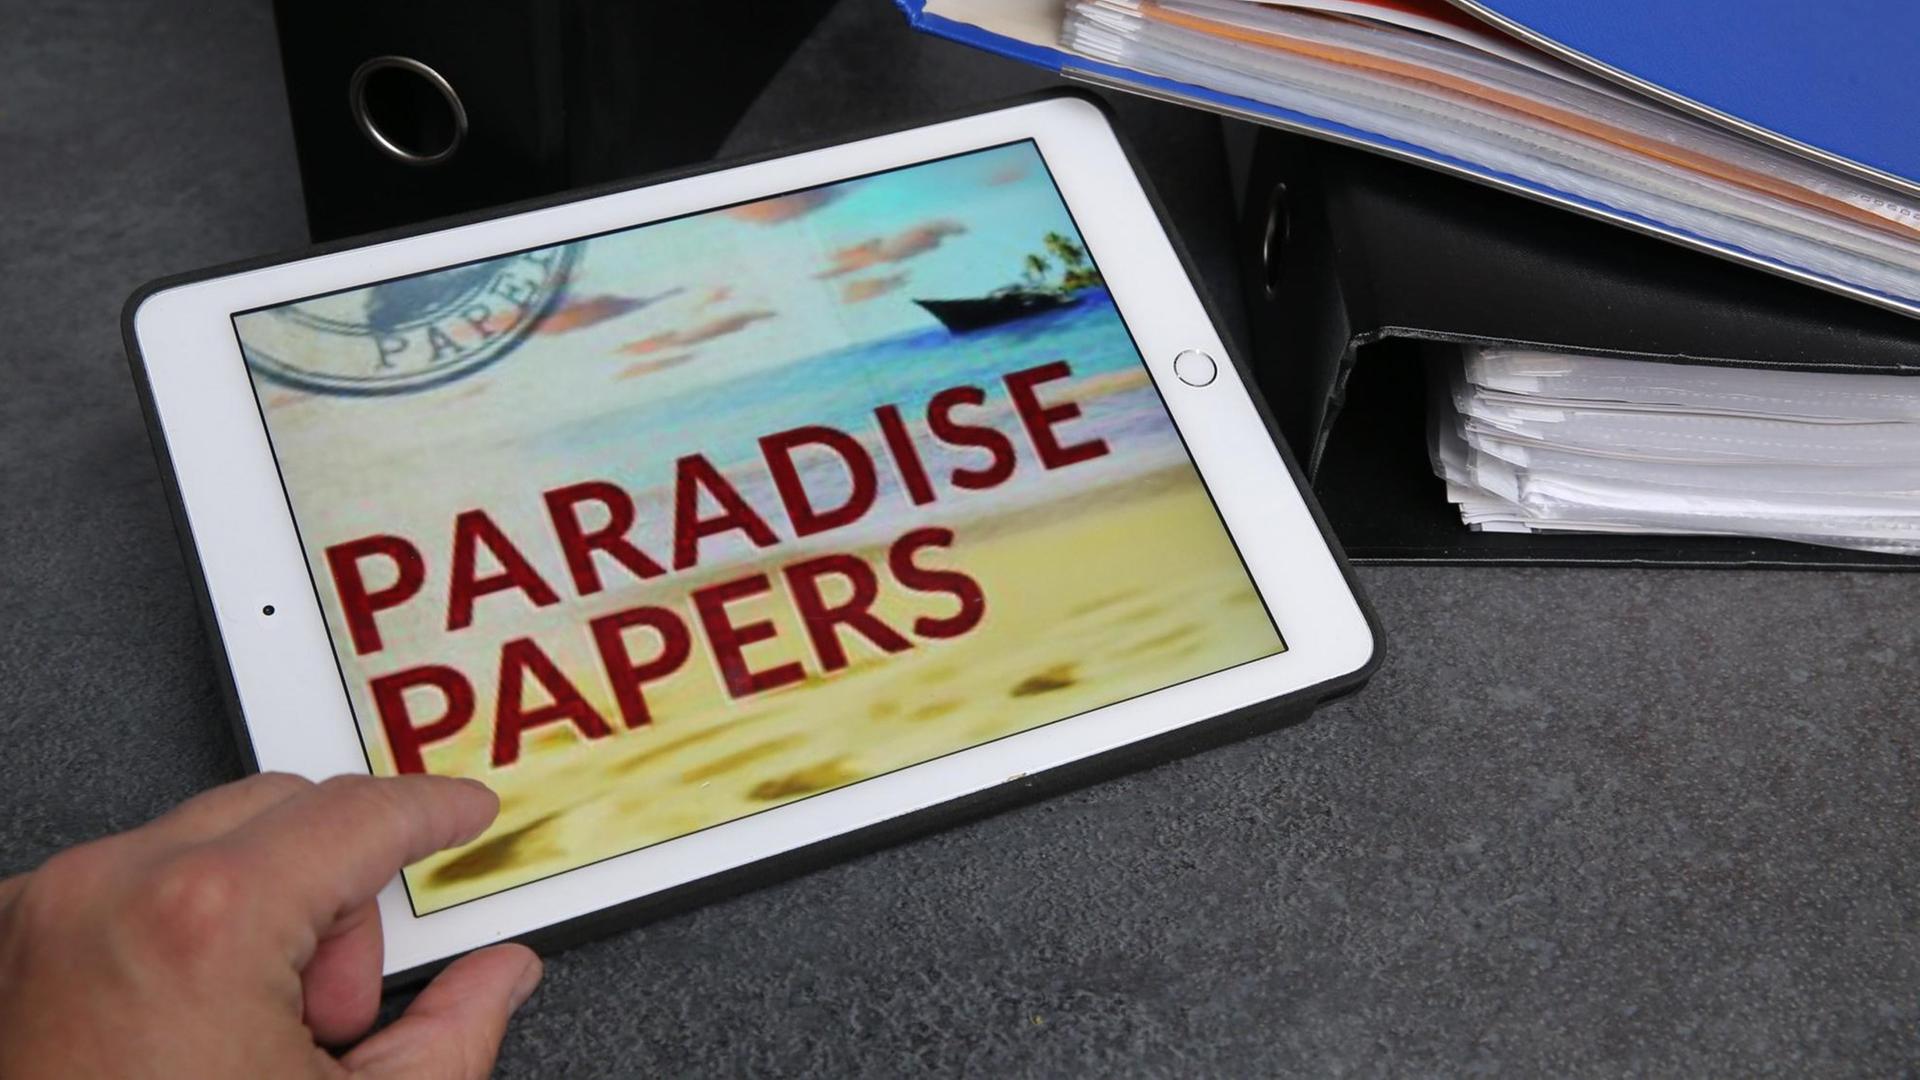 Eine Hand auf einem Tablet - auf dem Dislplay steht "Paradise Papers"